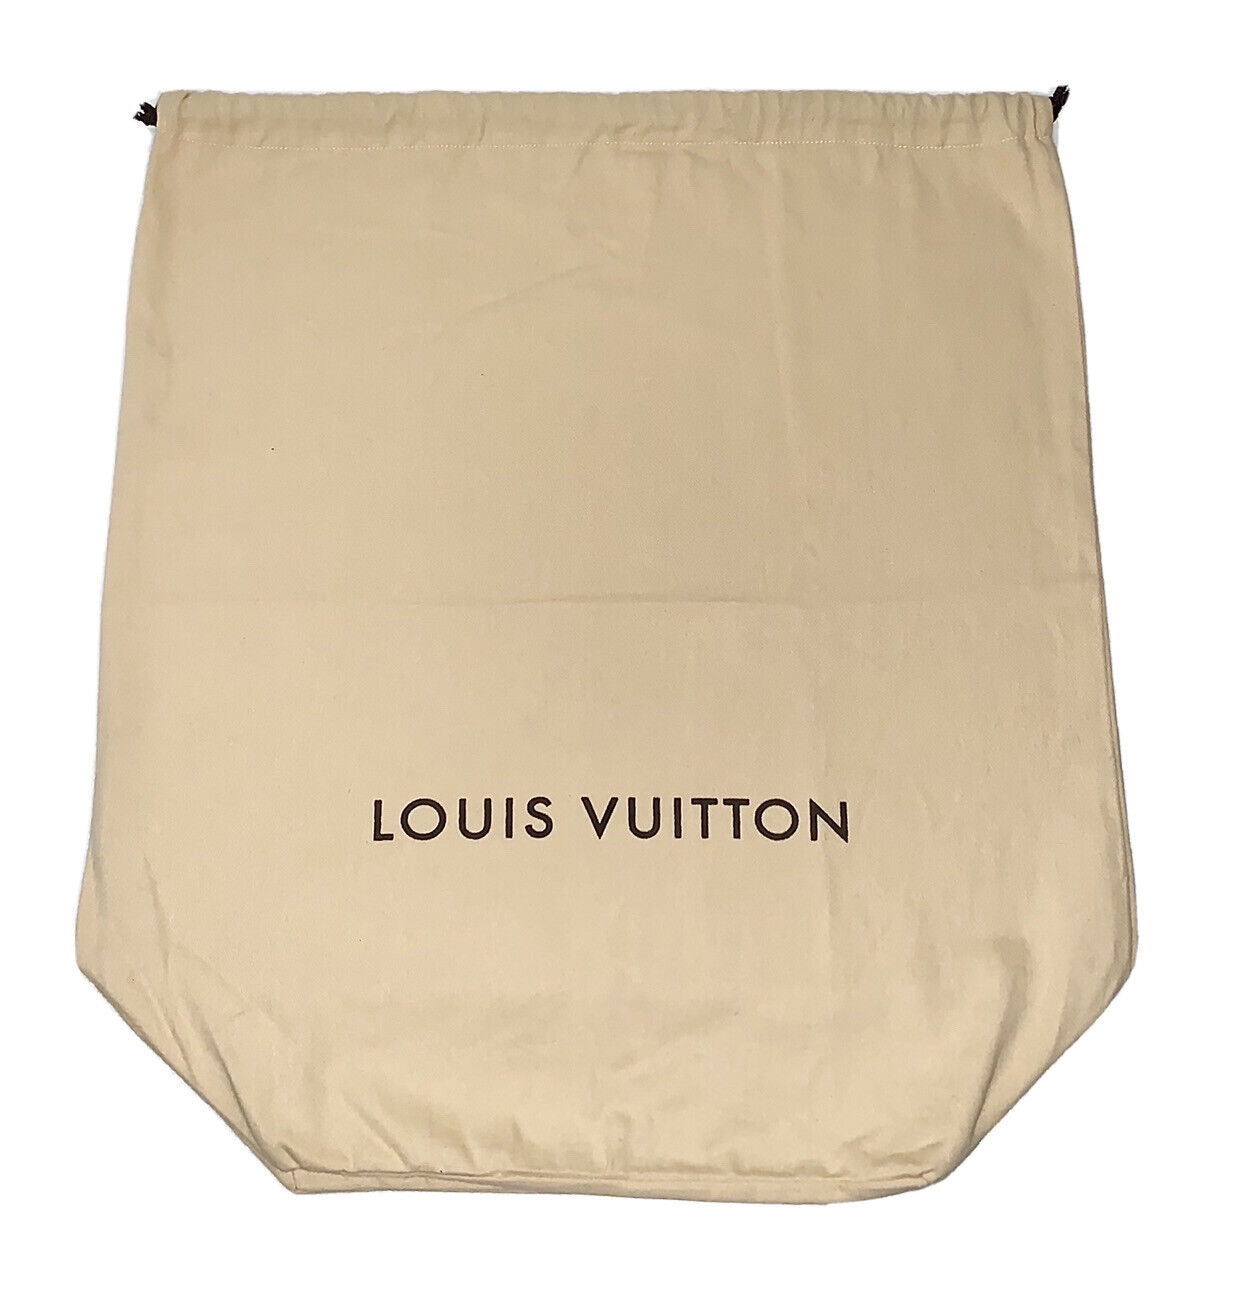 Louis Vuitton Dustbag 20 x 17 Drawstring Large Authentic